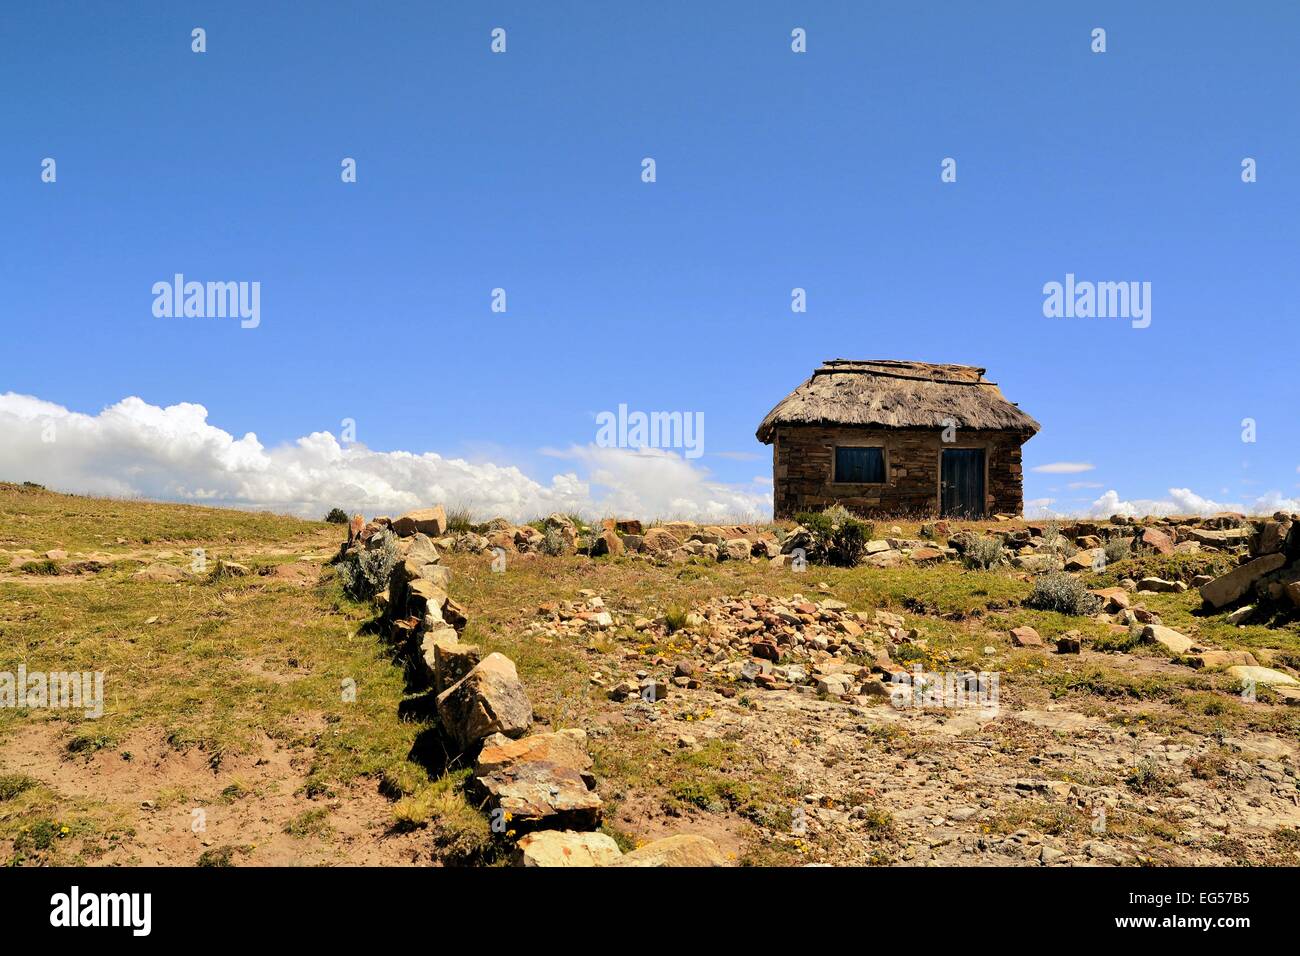 Adobe-Bauer-Haus auf dem Lande Altiplano Boliviens Stockfoto